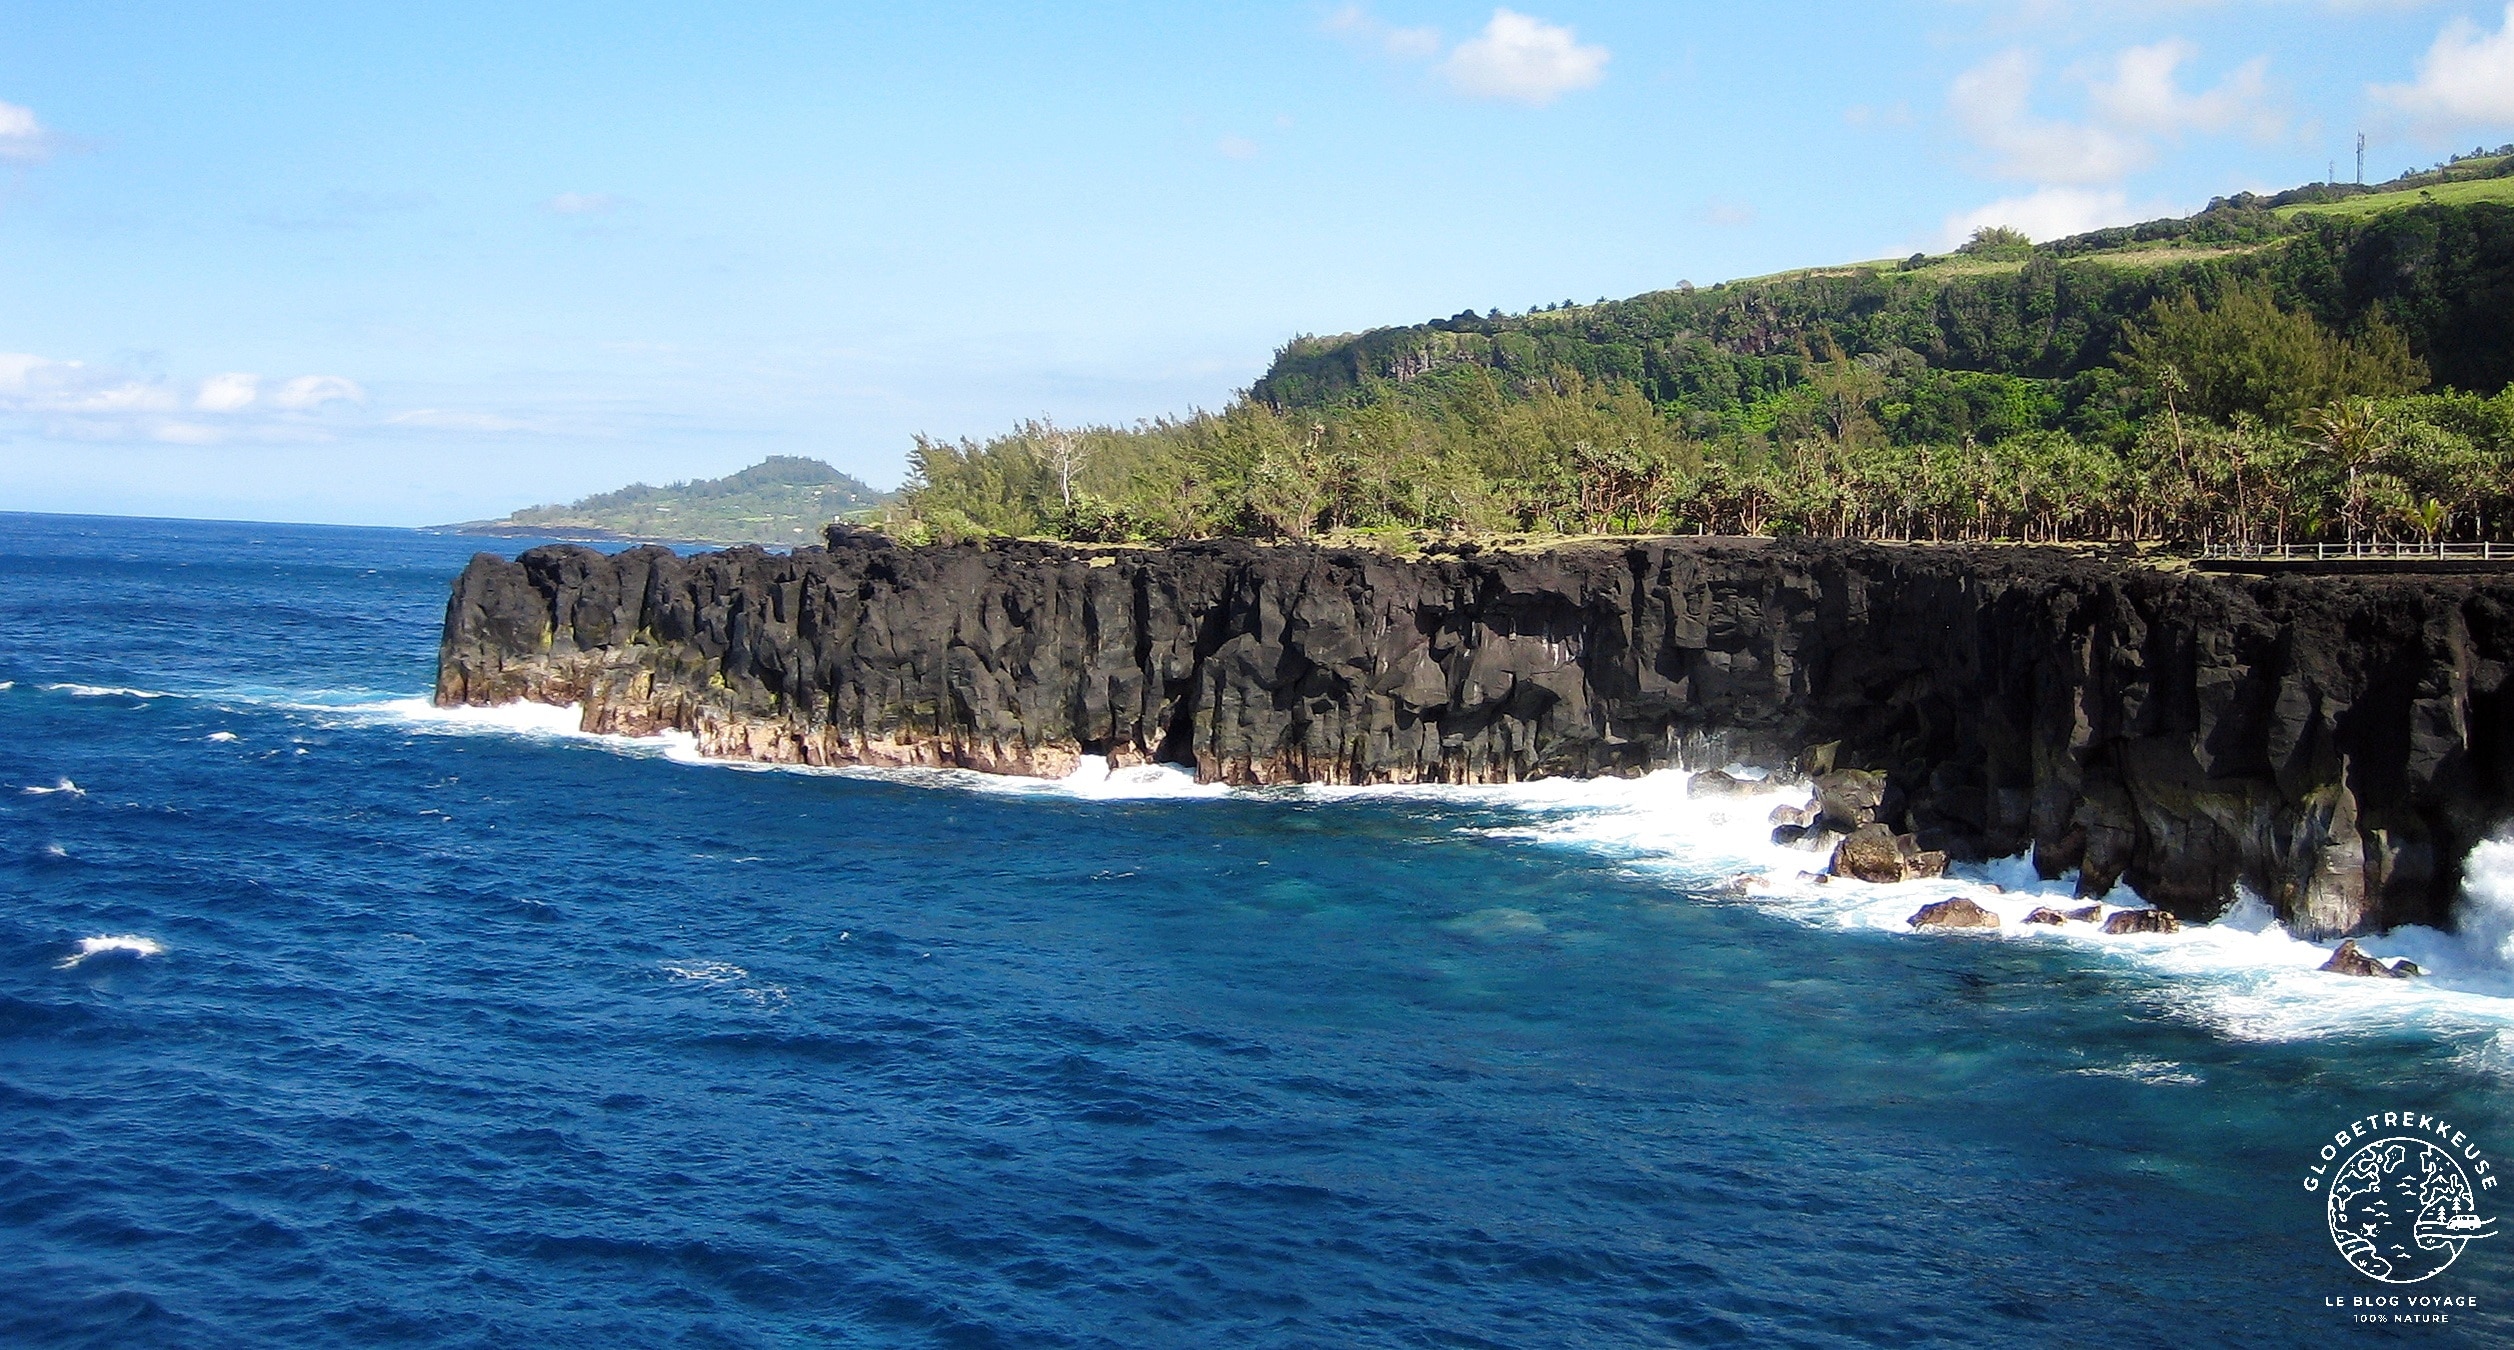 Les merveilles de l'Ile de la Réunion